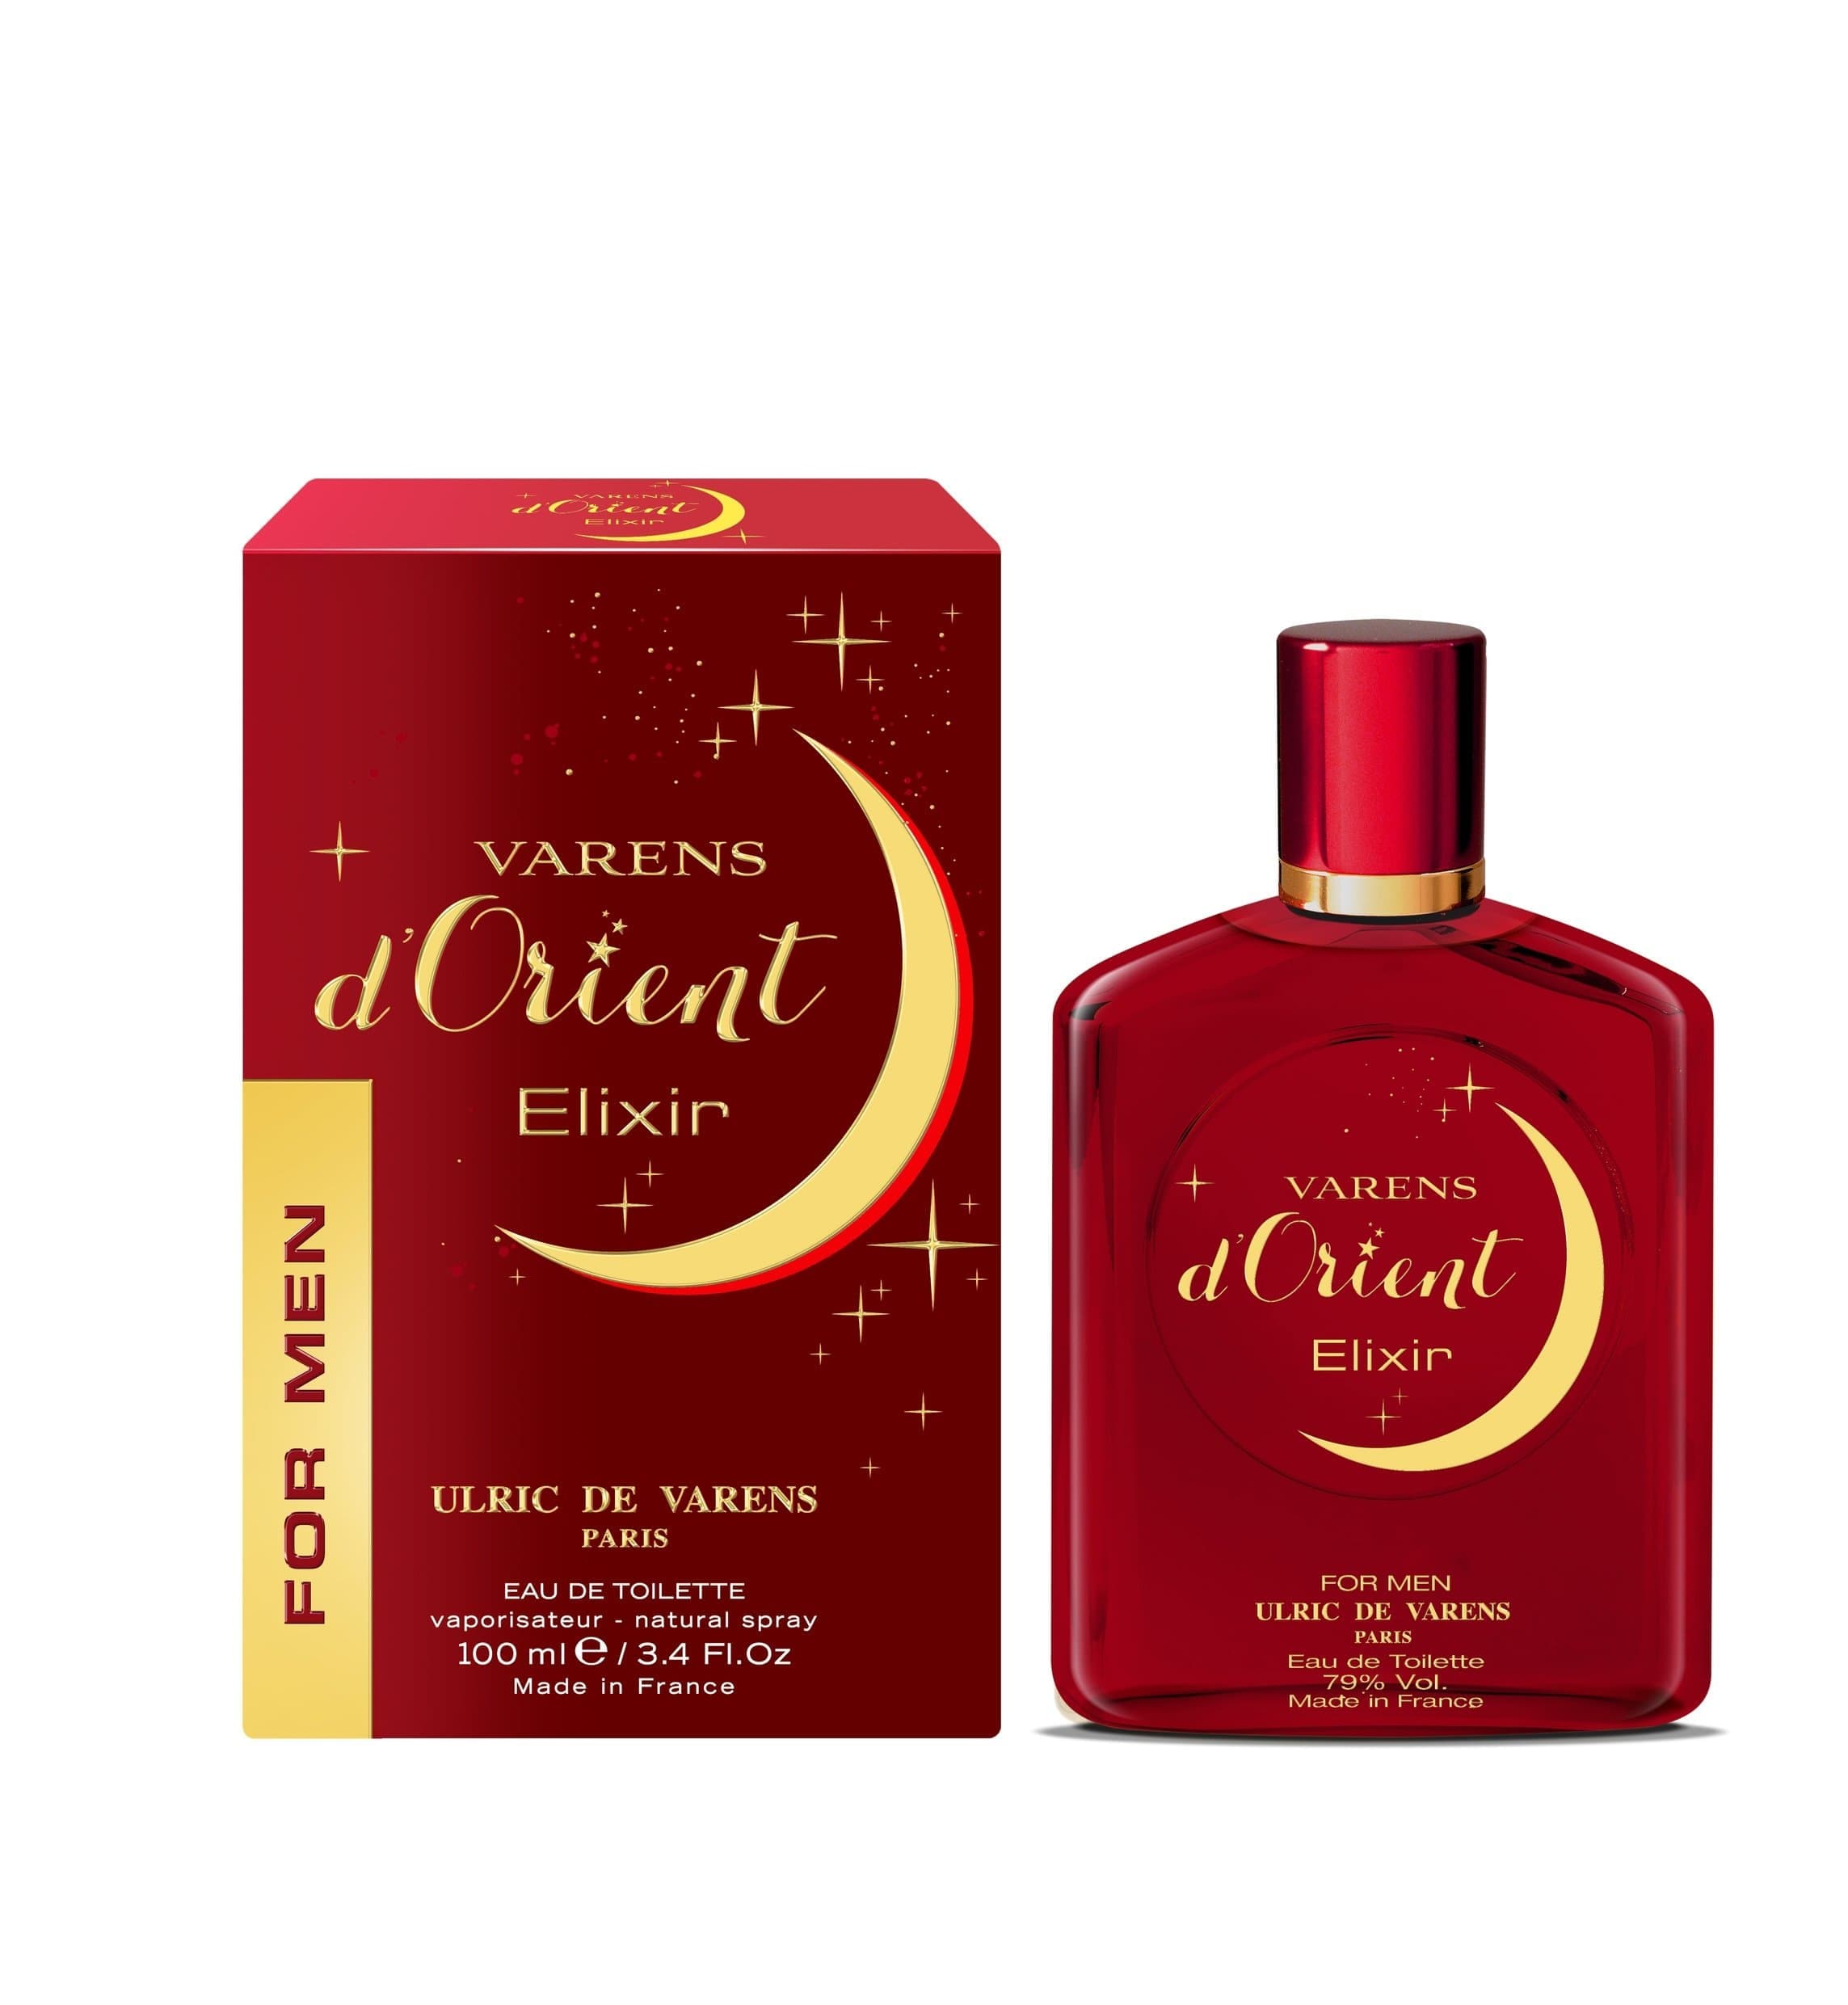 ULRIC DE VARENS perfume for men VARENS D'ORIENT ELIXIR Eau de Toilette, 100 ml5814 - Jashanmal Home